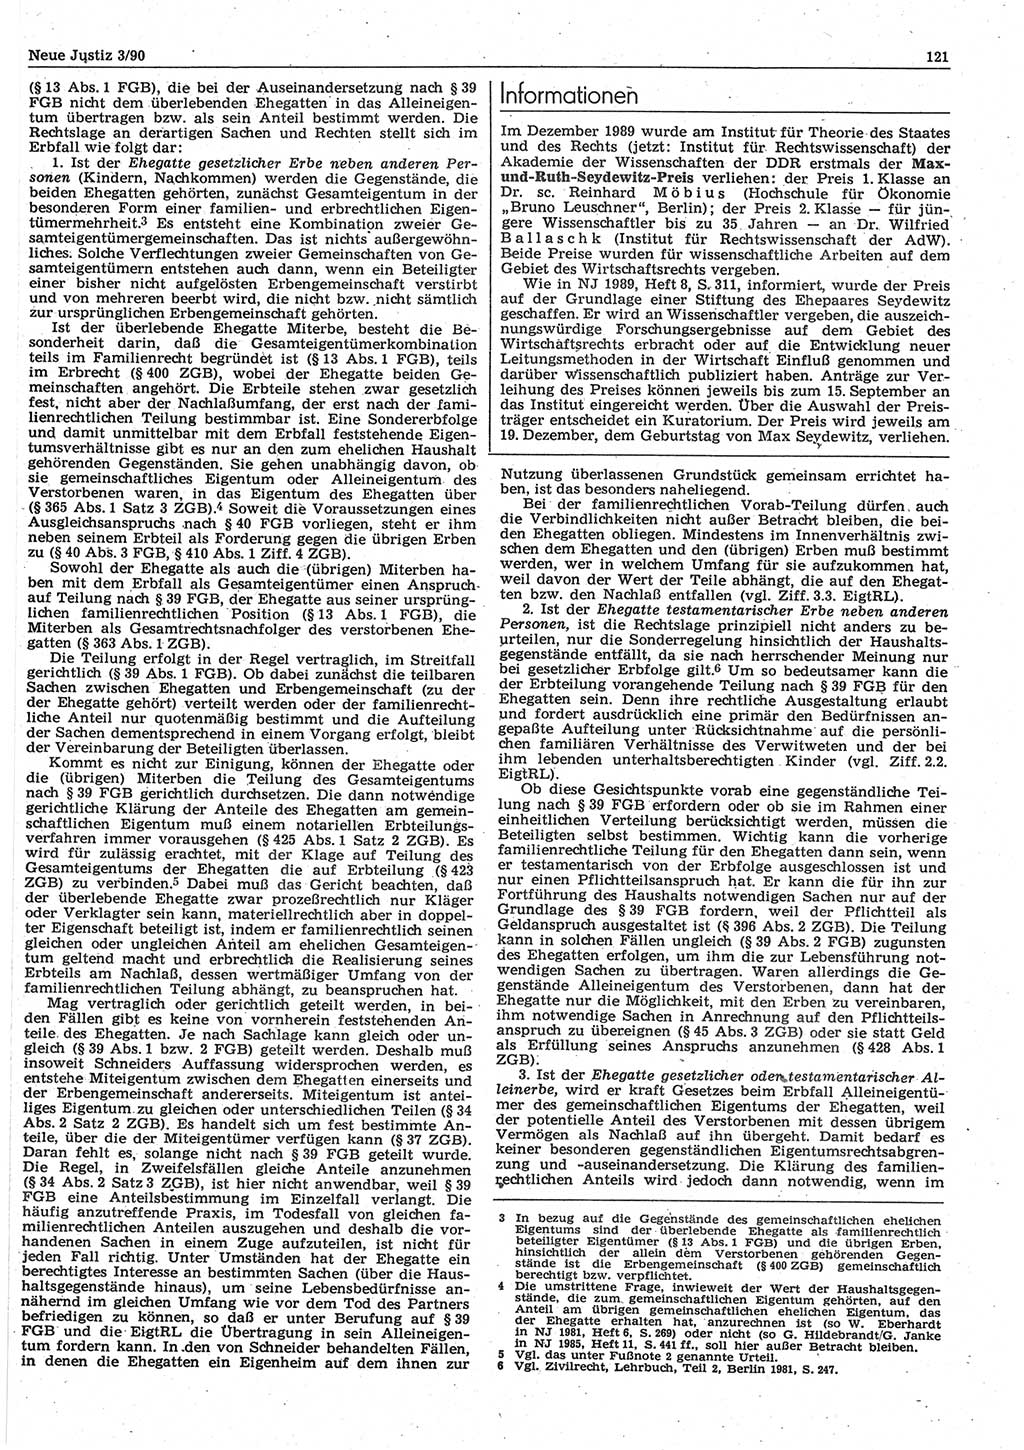 Neue Justiz (NJ), Zeitschrift für Rechtsetzung und Rechtsanwendung [Deutsche Demokratische Republik (DDR)], 44. Jahrgang 1990, Seite 121 (NJ DDR 1990, S. 121)